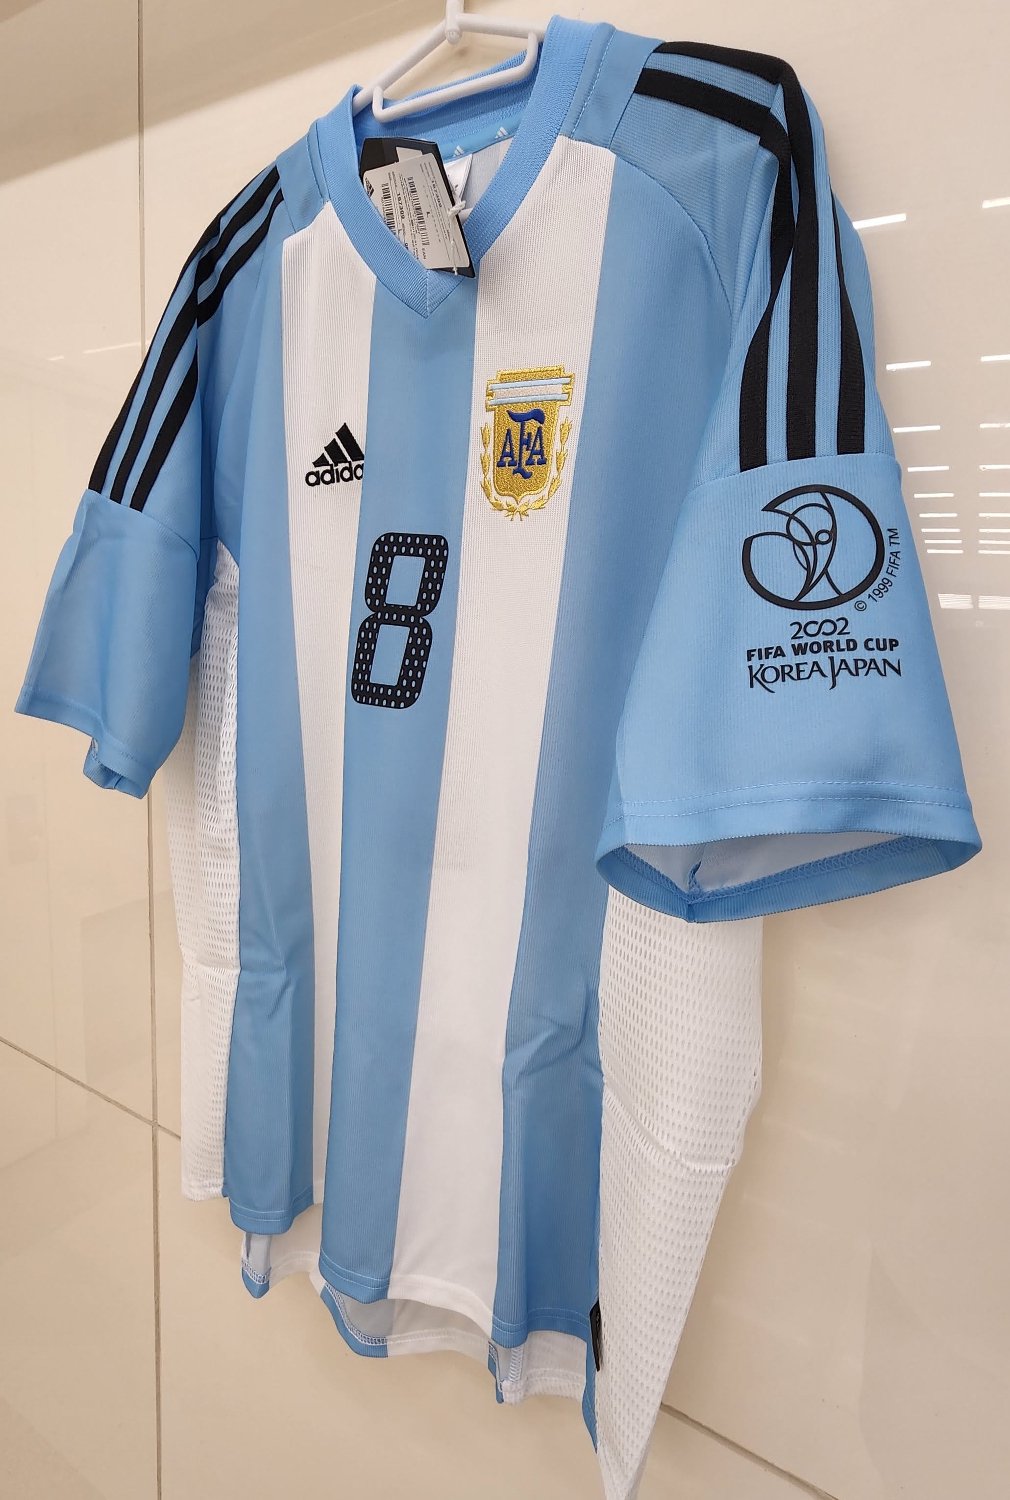 激安】 アルゼンチン代表ユニホーム 2002・日韓W杯 ウェア